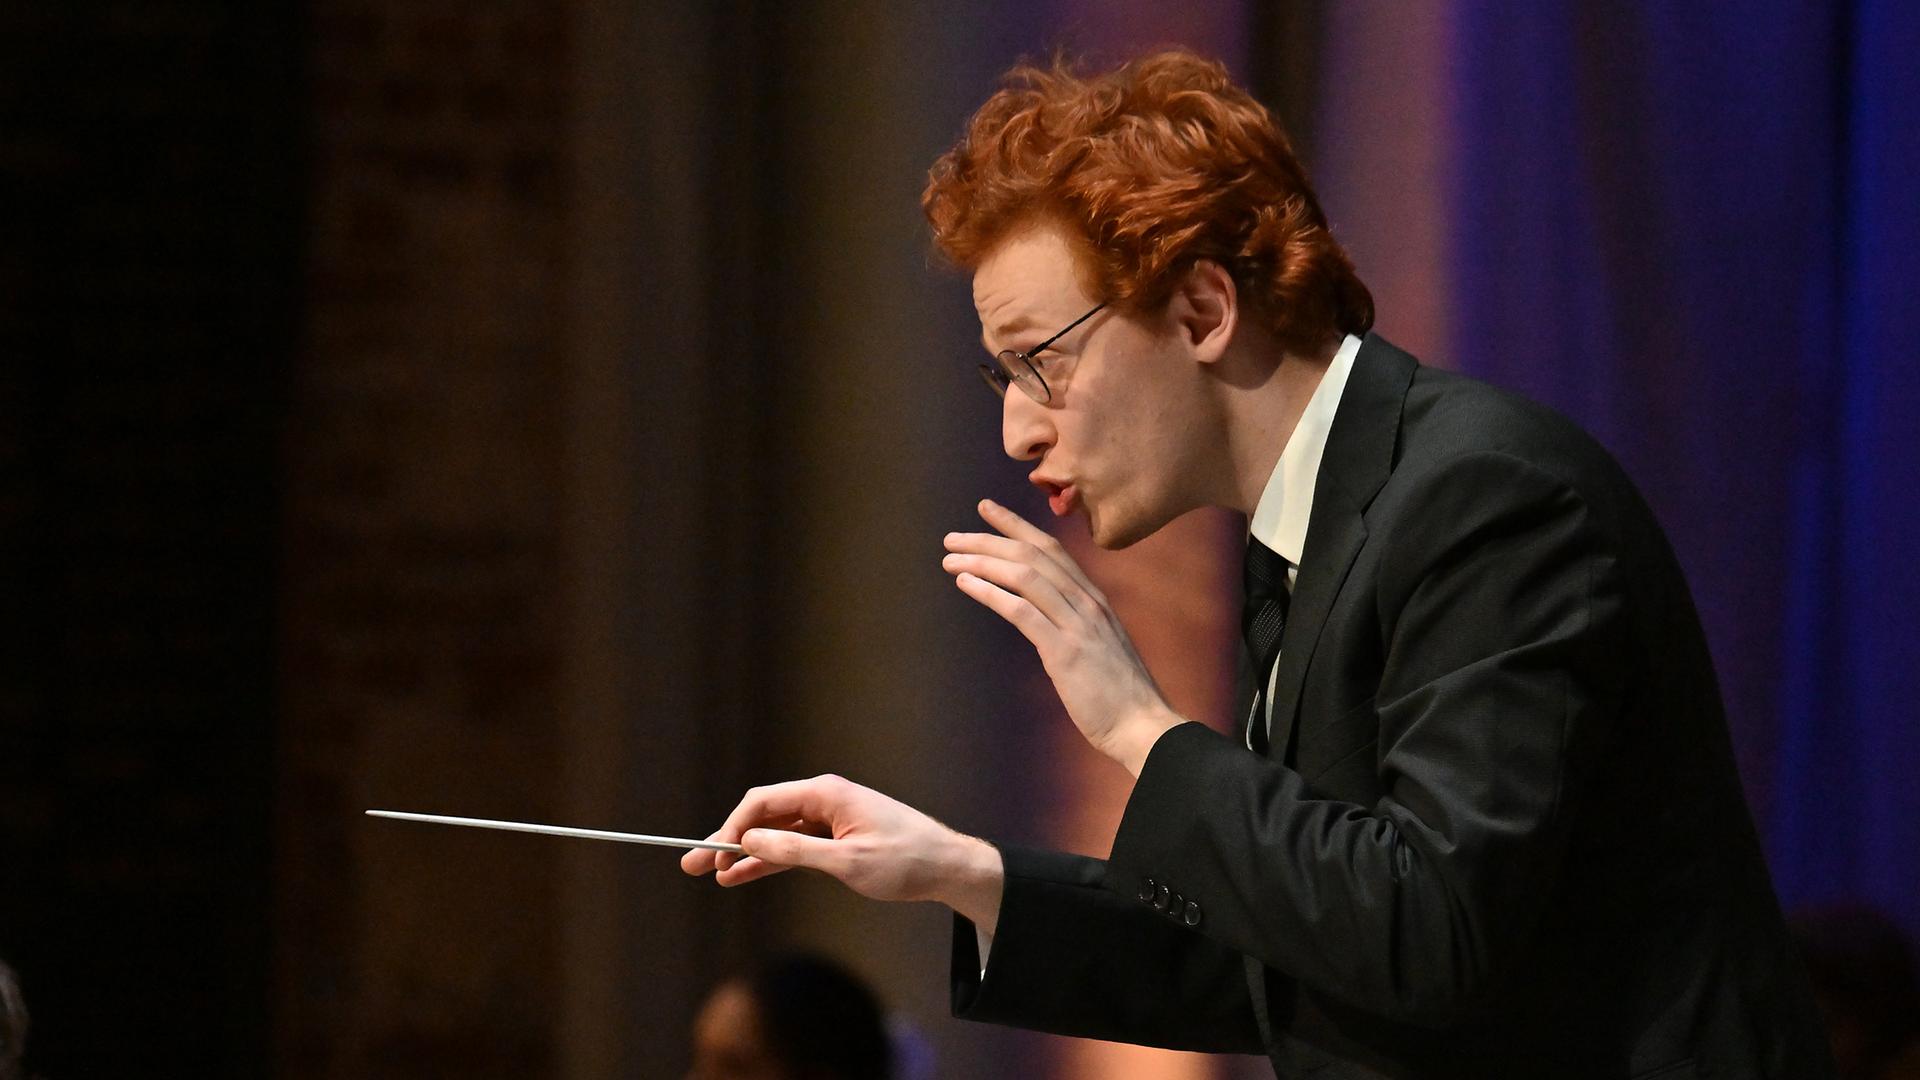 Ein junger Mann mit Brille und roten kurzen Haaren gibt ein Zeichen, dass das Orchester leiser spielen soll. In der rechten Hand hält er einen Dirigierstab.